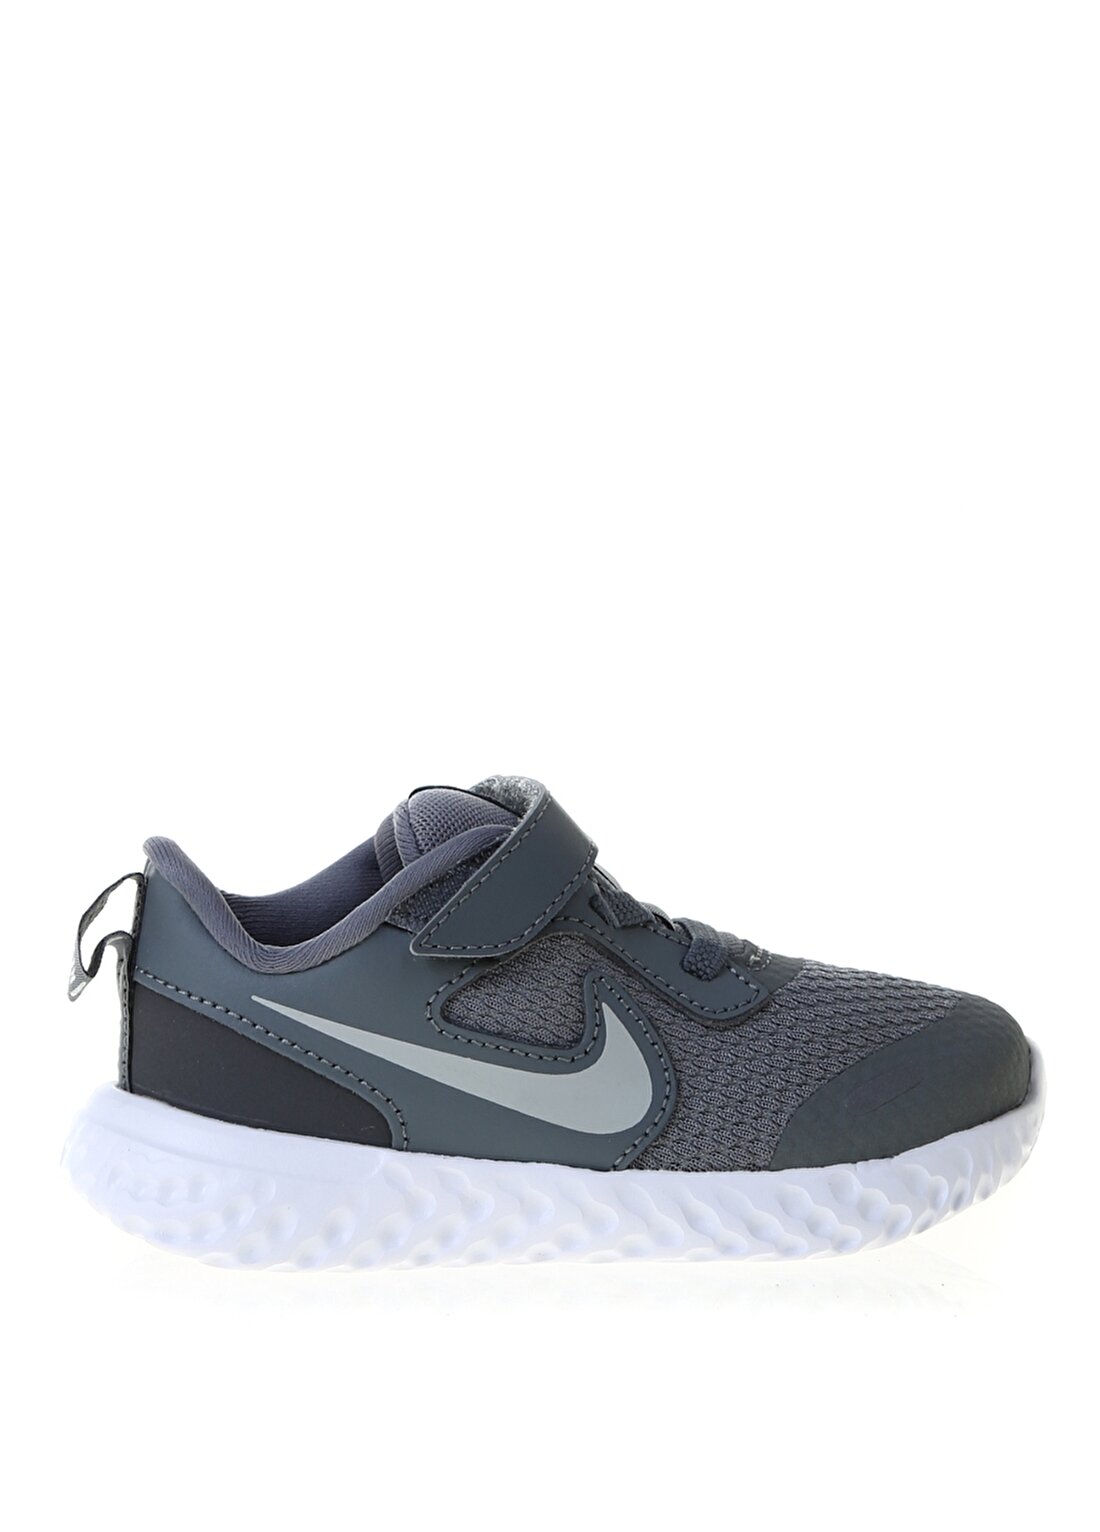 Nike BQ5673-004 Revolutıon 5 (Tdv) Koyugri Erkek Çocuk Yürüyüş Ayakkabısı